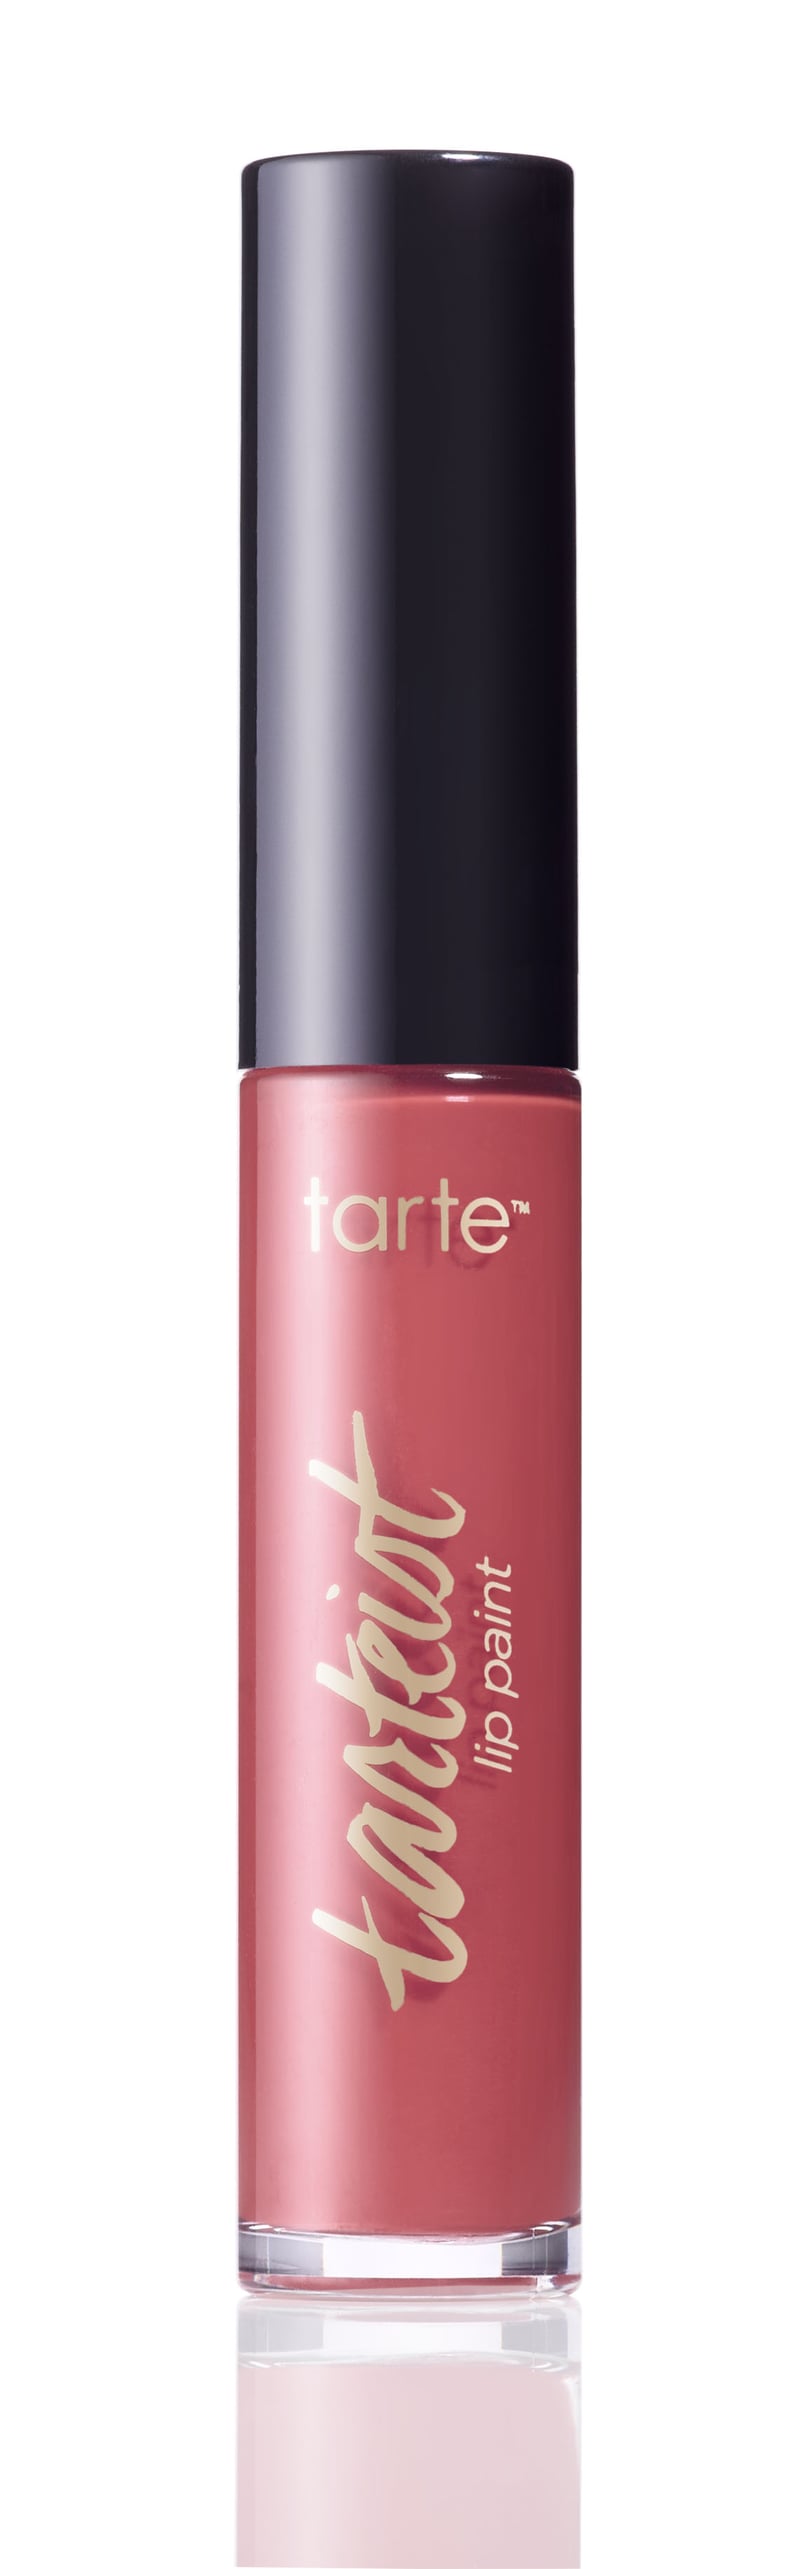 Tarte Cosmetics Tarteist Lip Paint in So Fetch